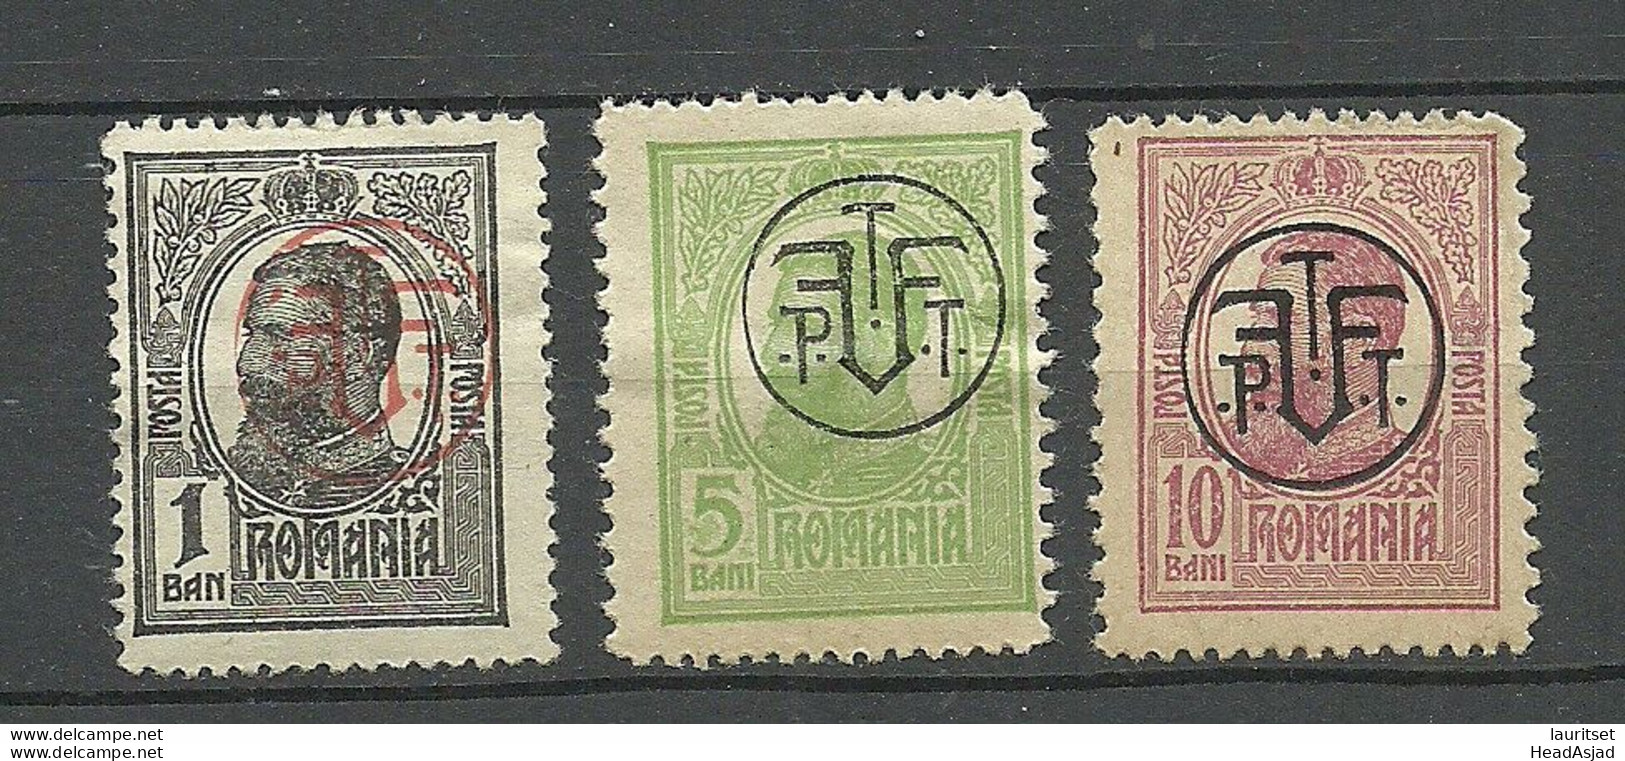 ROMANIA Rumänien 1918 Michel 248 - 250 * - Unused Stamps